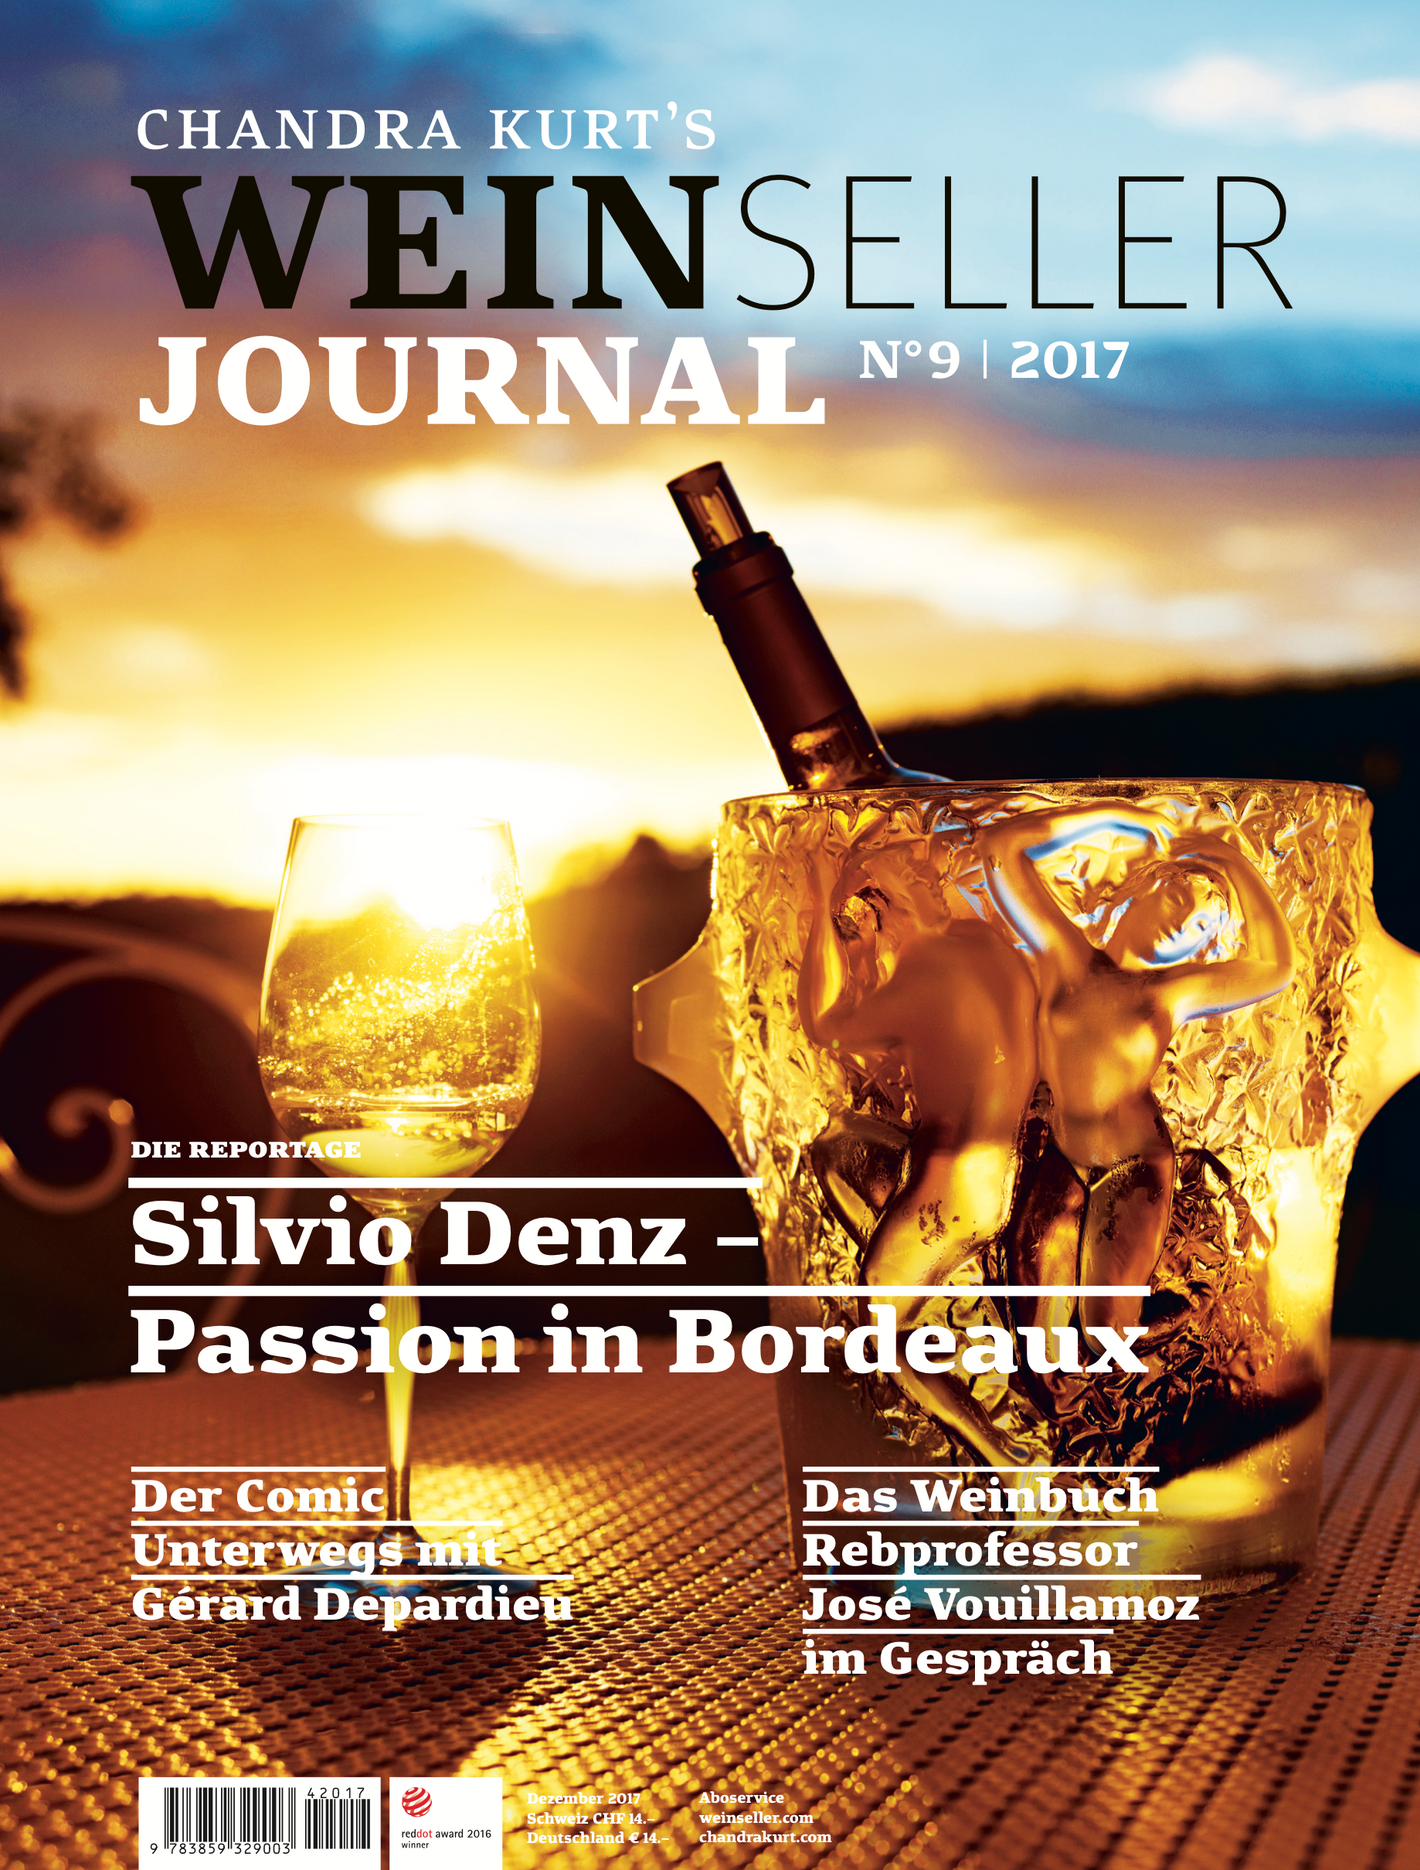 Weinseller Journal 09/17 - WEBER VERLAG